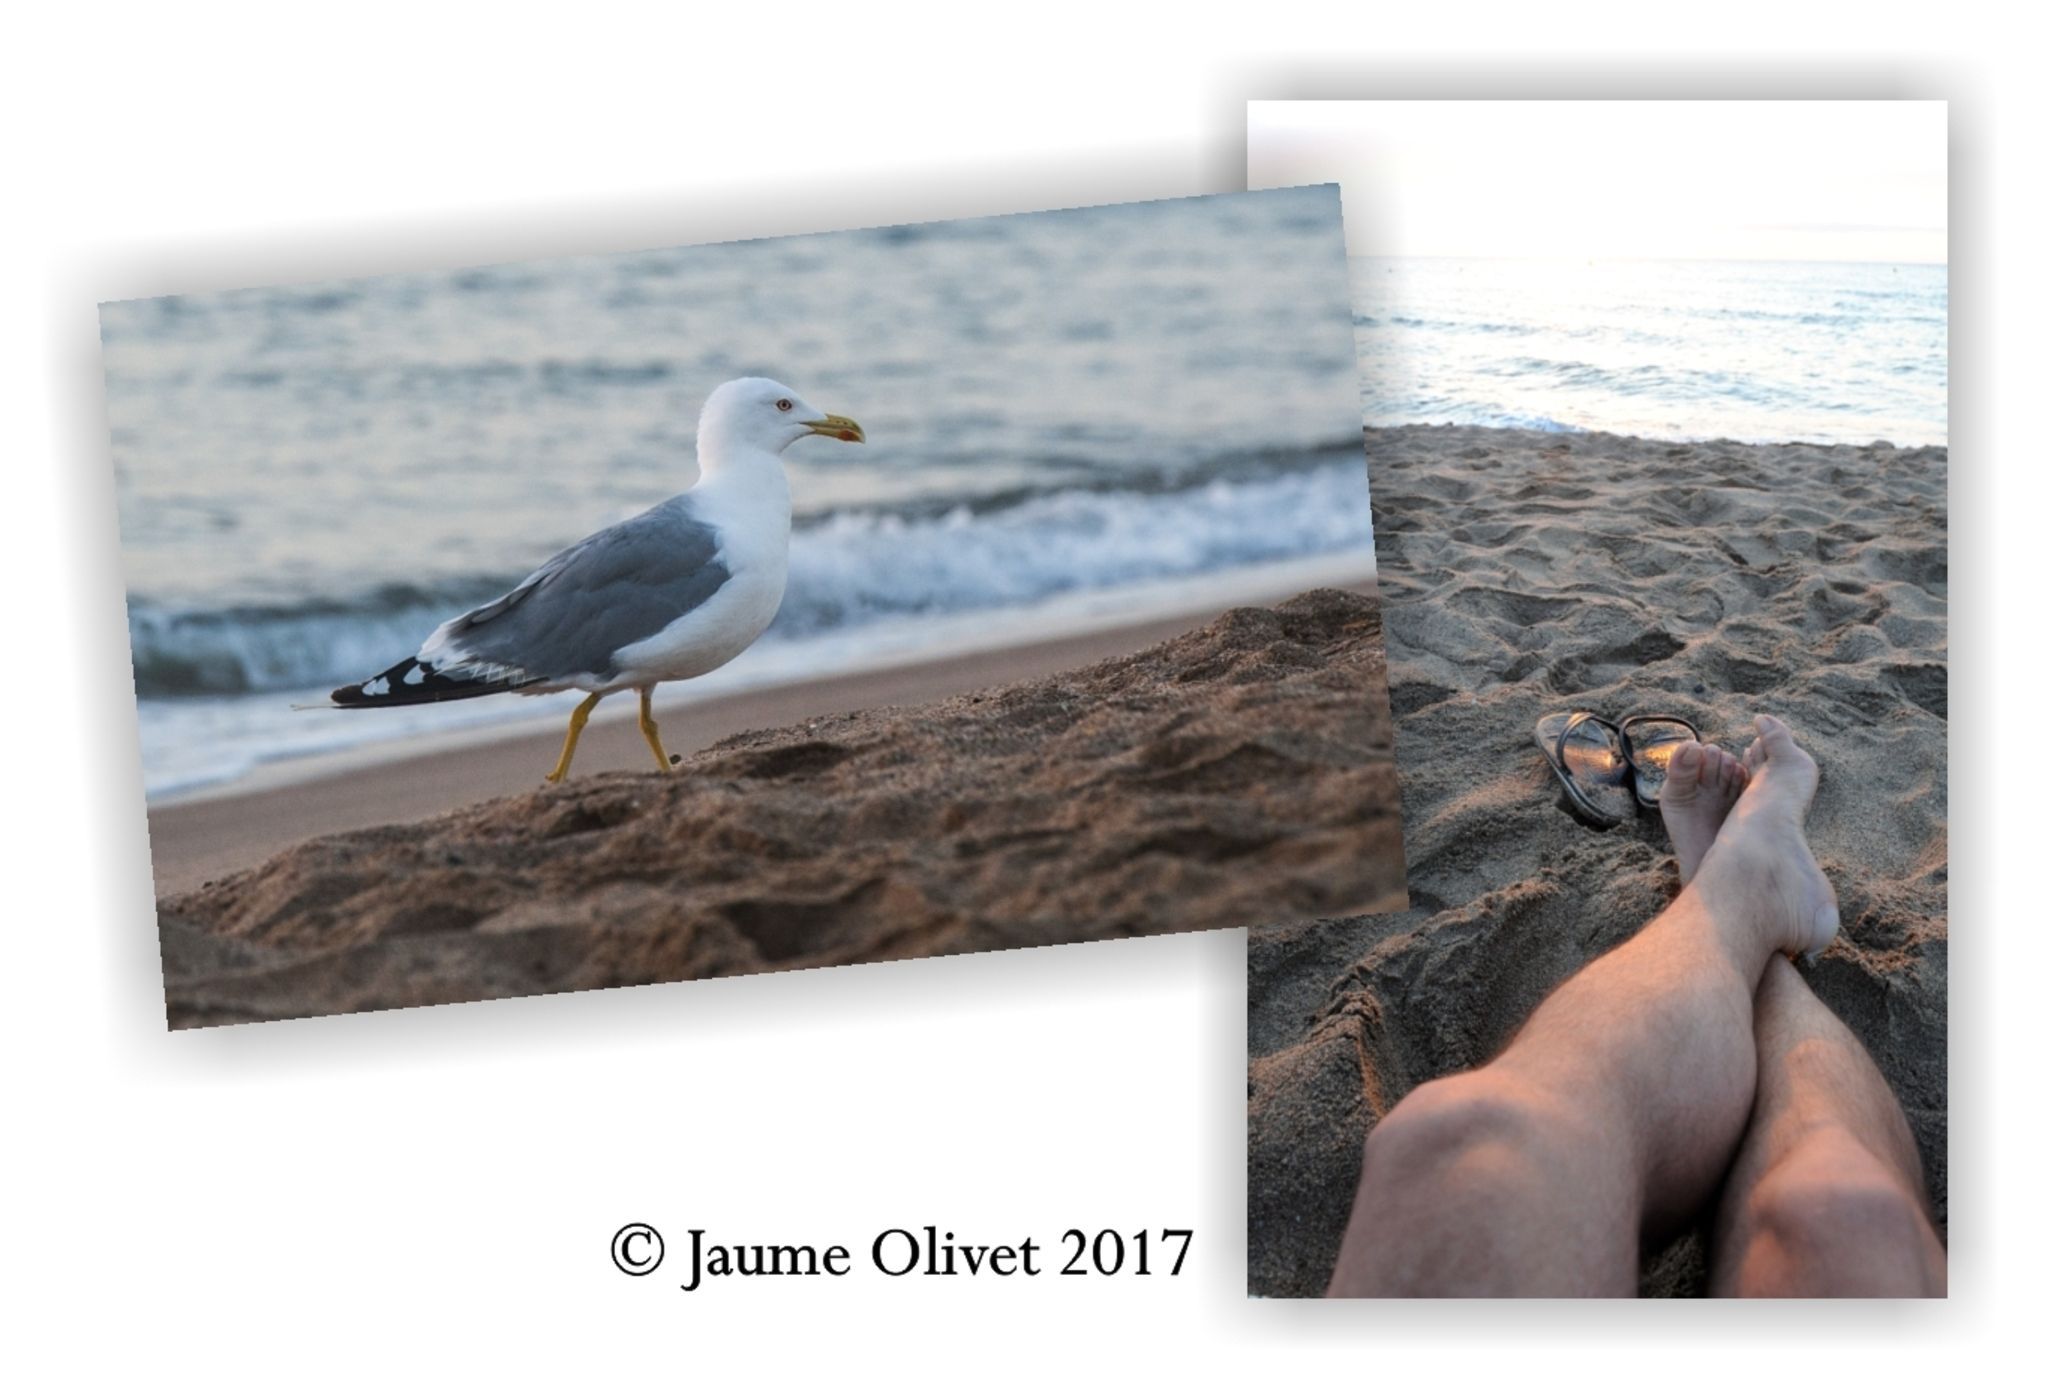  Jaume Olivet 2017